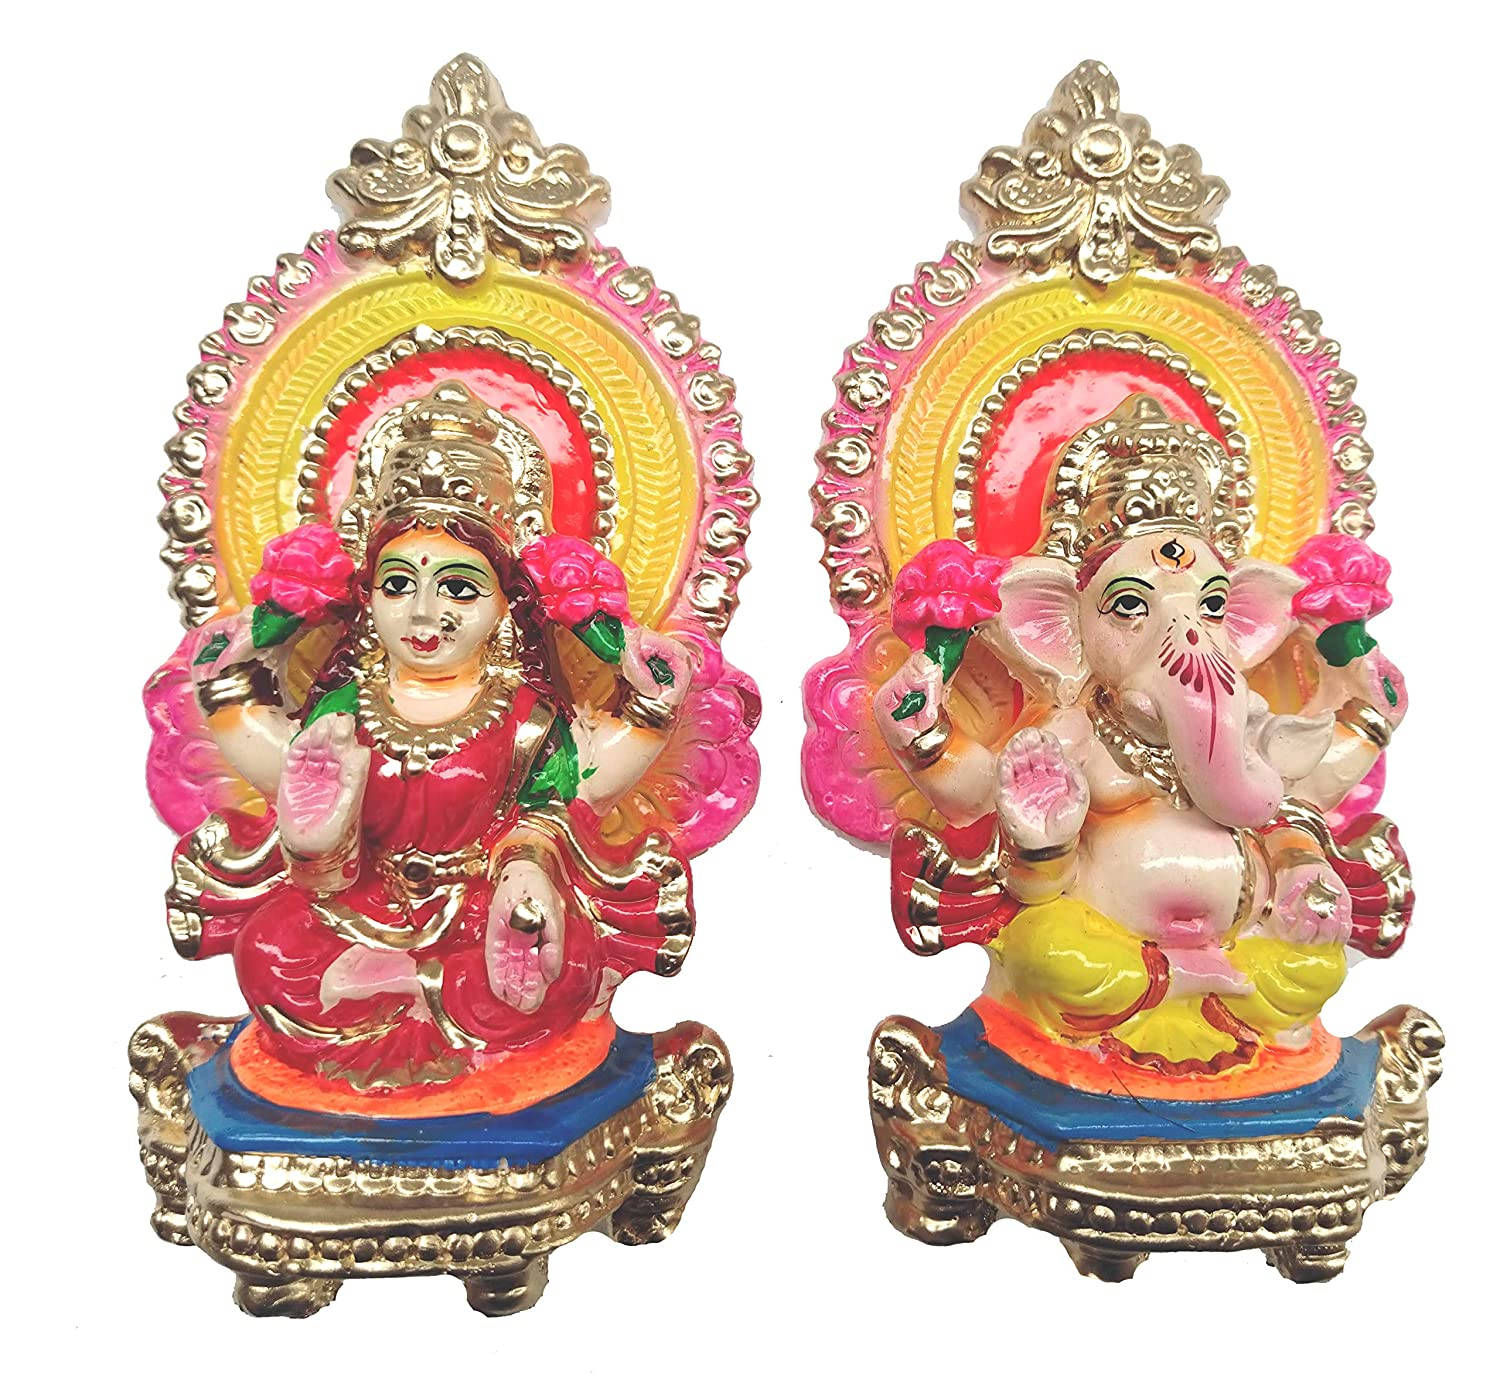 Cute Figurines Of Ganesh Lakshmi Wallpaper